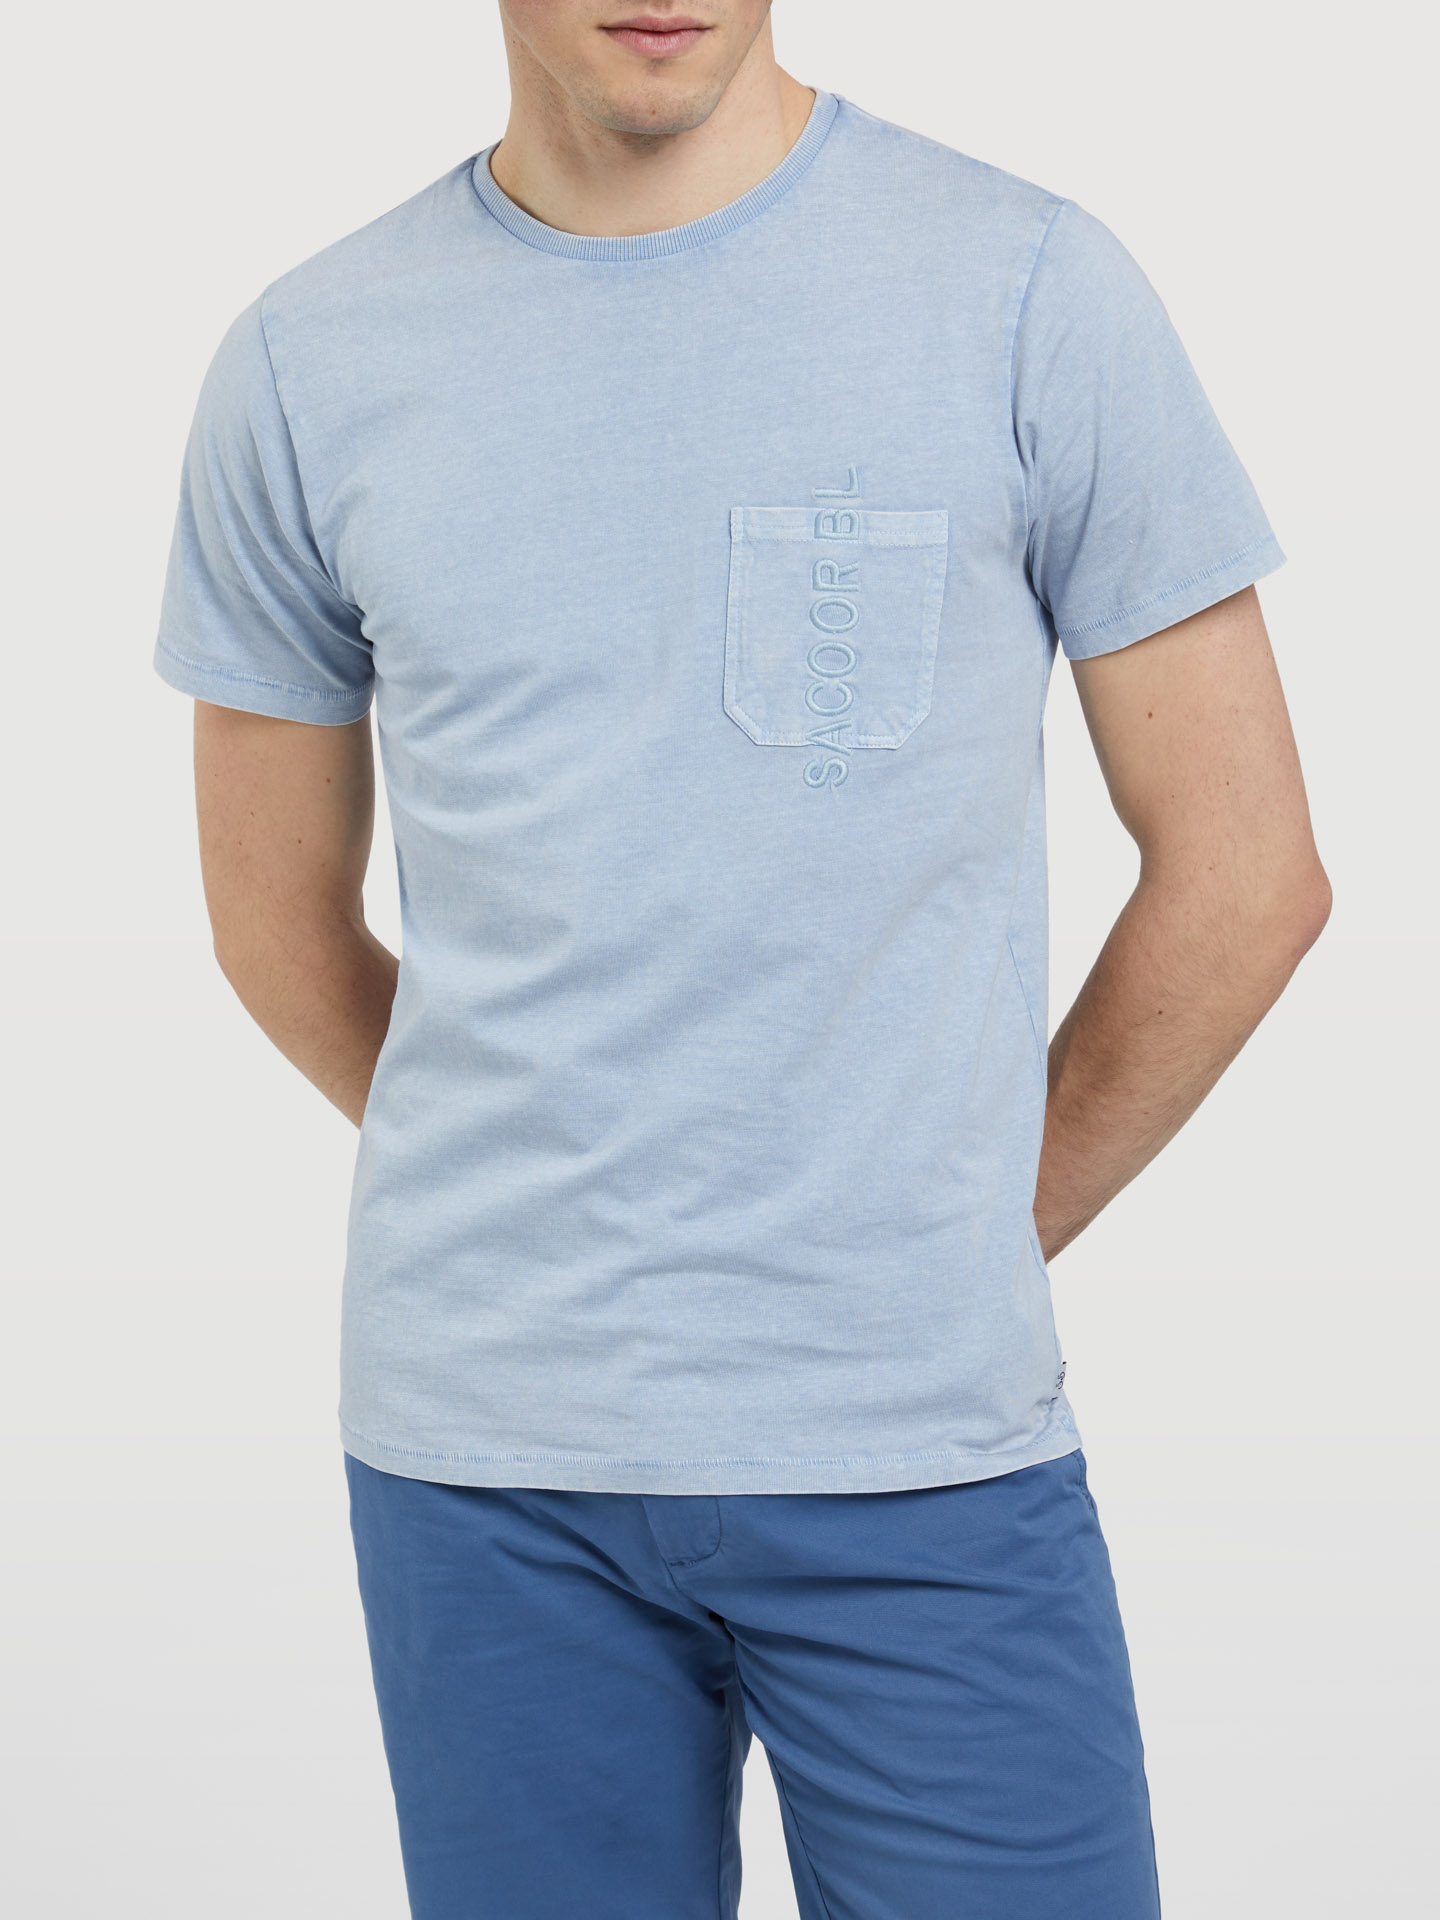 T-Shirt Light Blue Casual Man